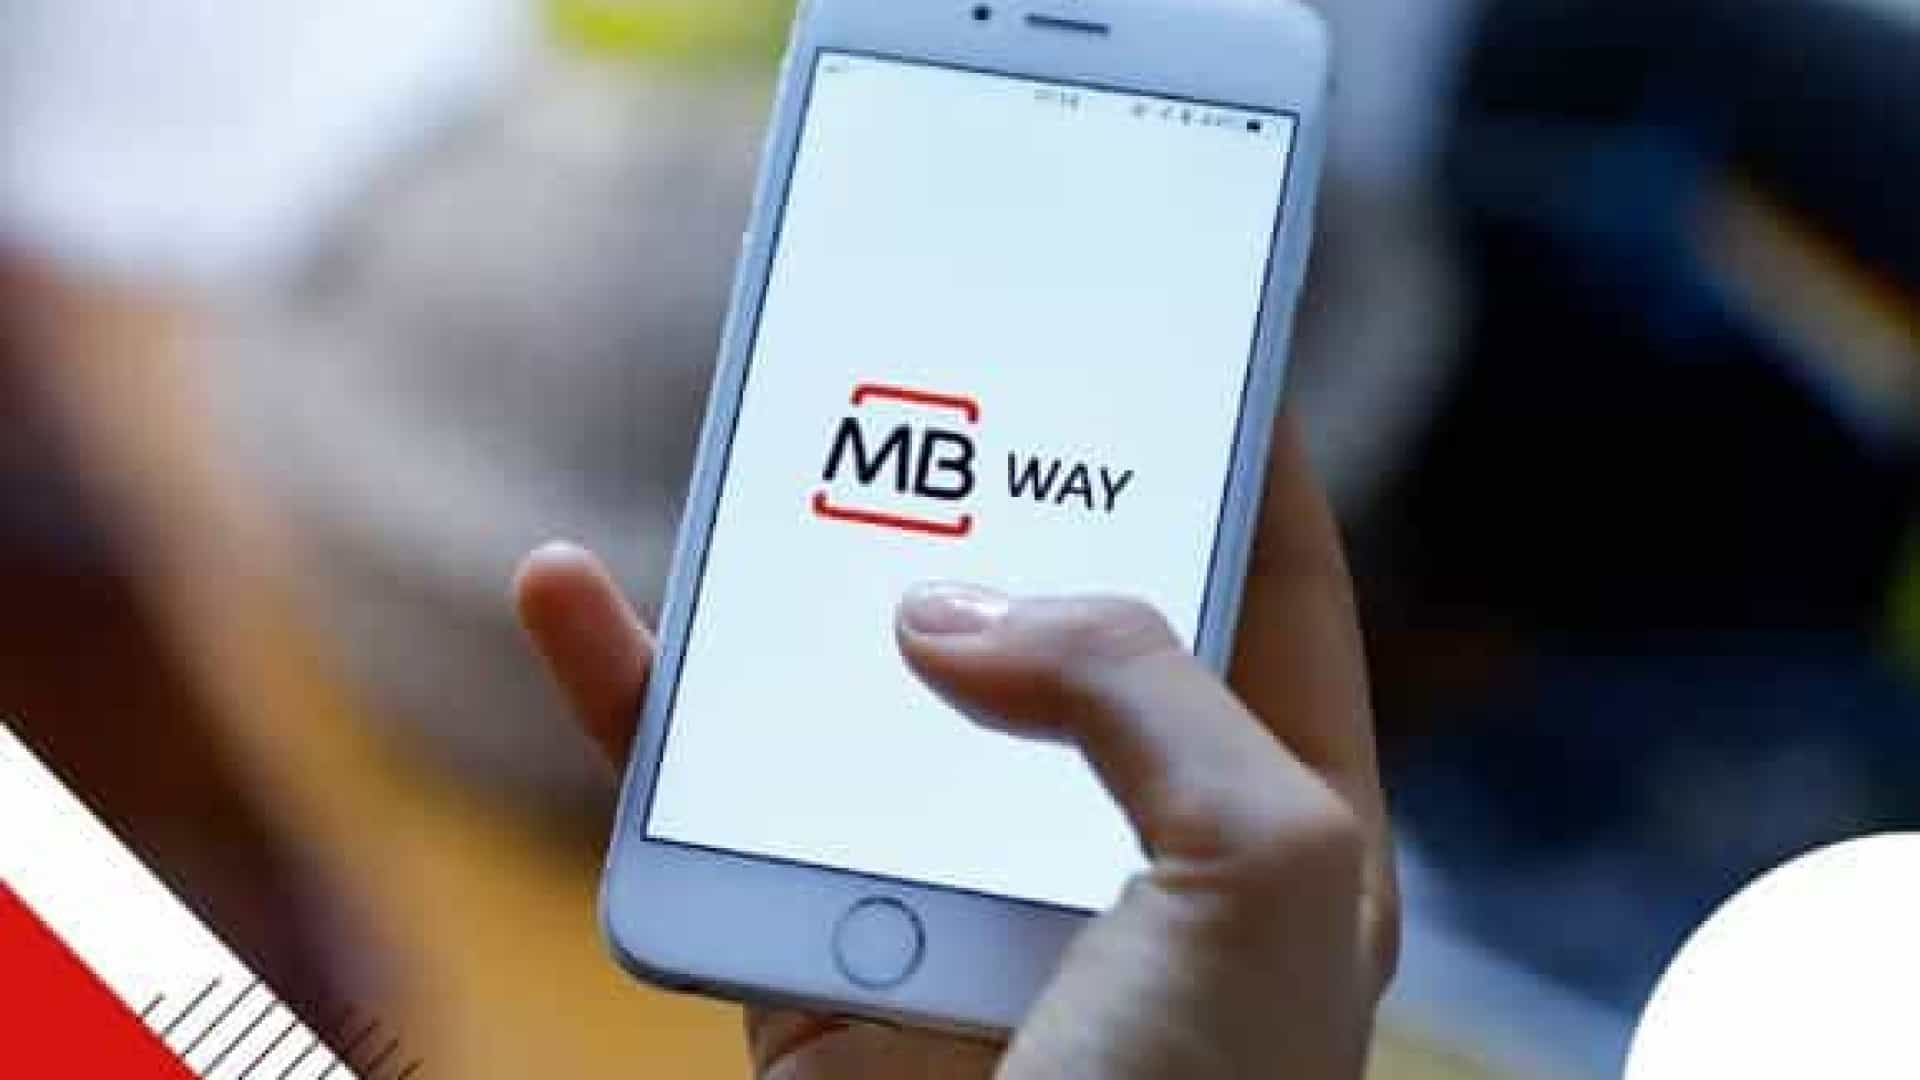 GNR identifica suspeito de burla através da 'app' MB Way